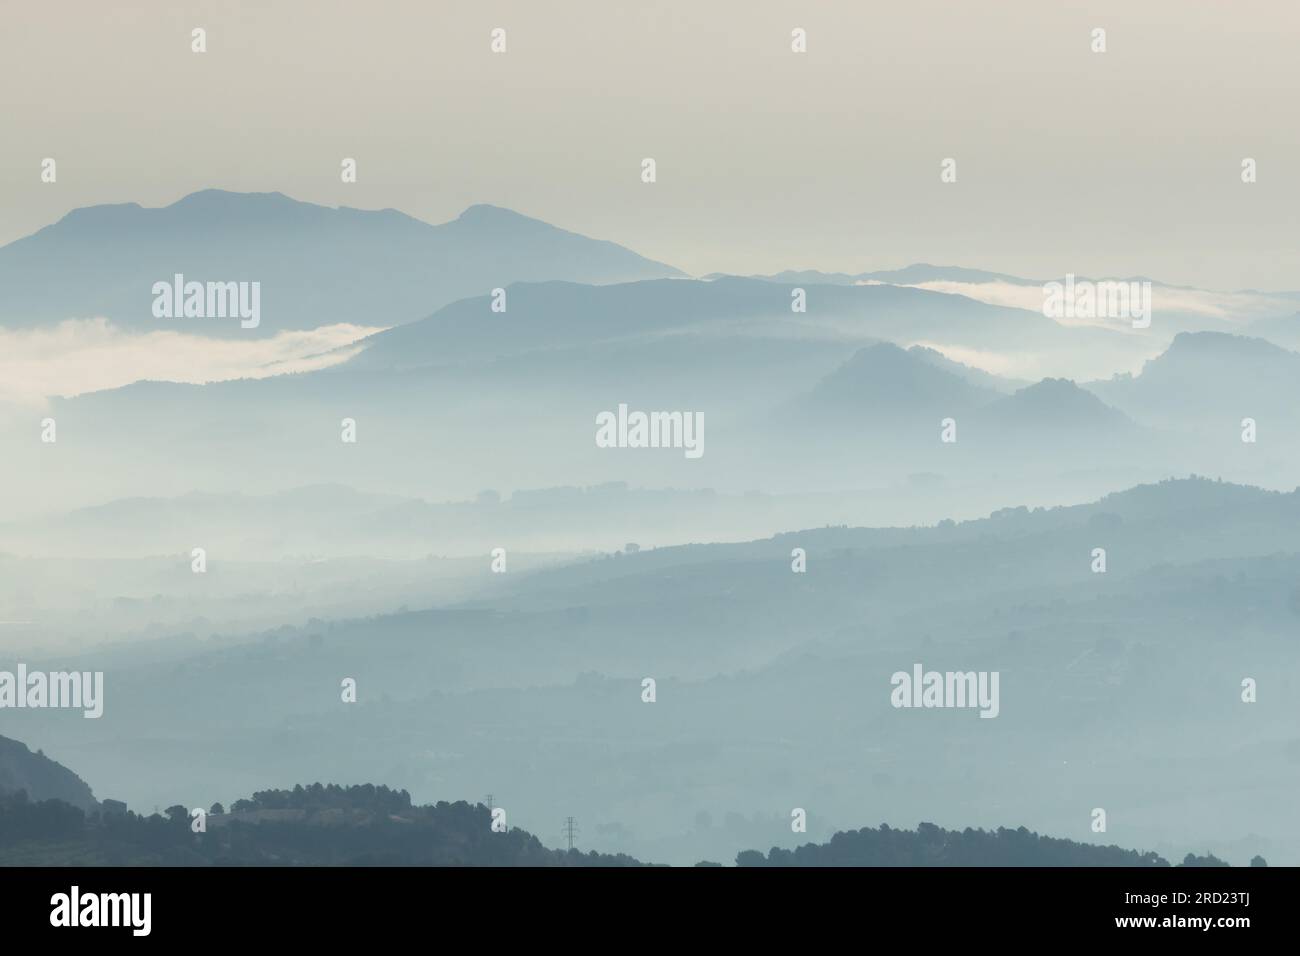 Silhouetten von schichtförmigen Bergen, die von einem Nebel aus dem Alten de les Pedreres in Alcoy, Spanien, umgeben sind Stockfoto